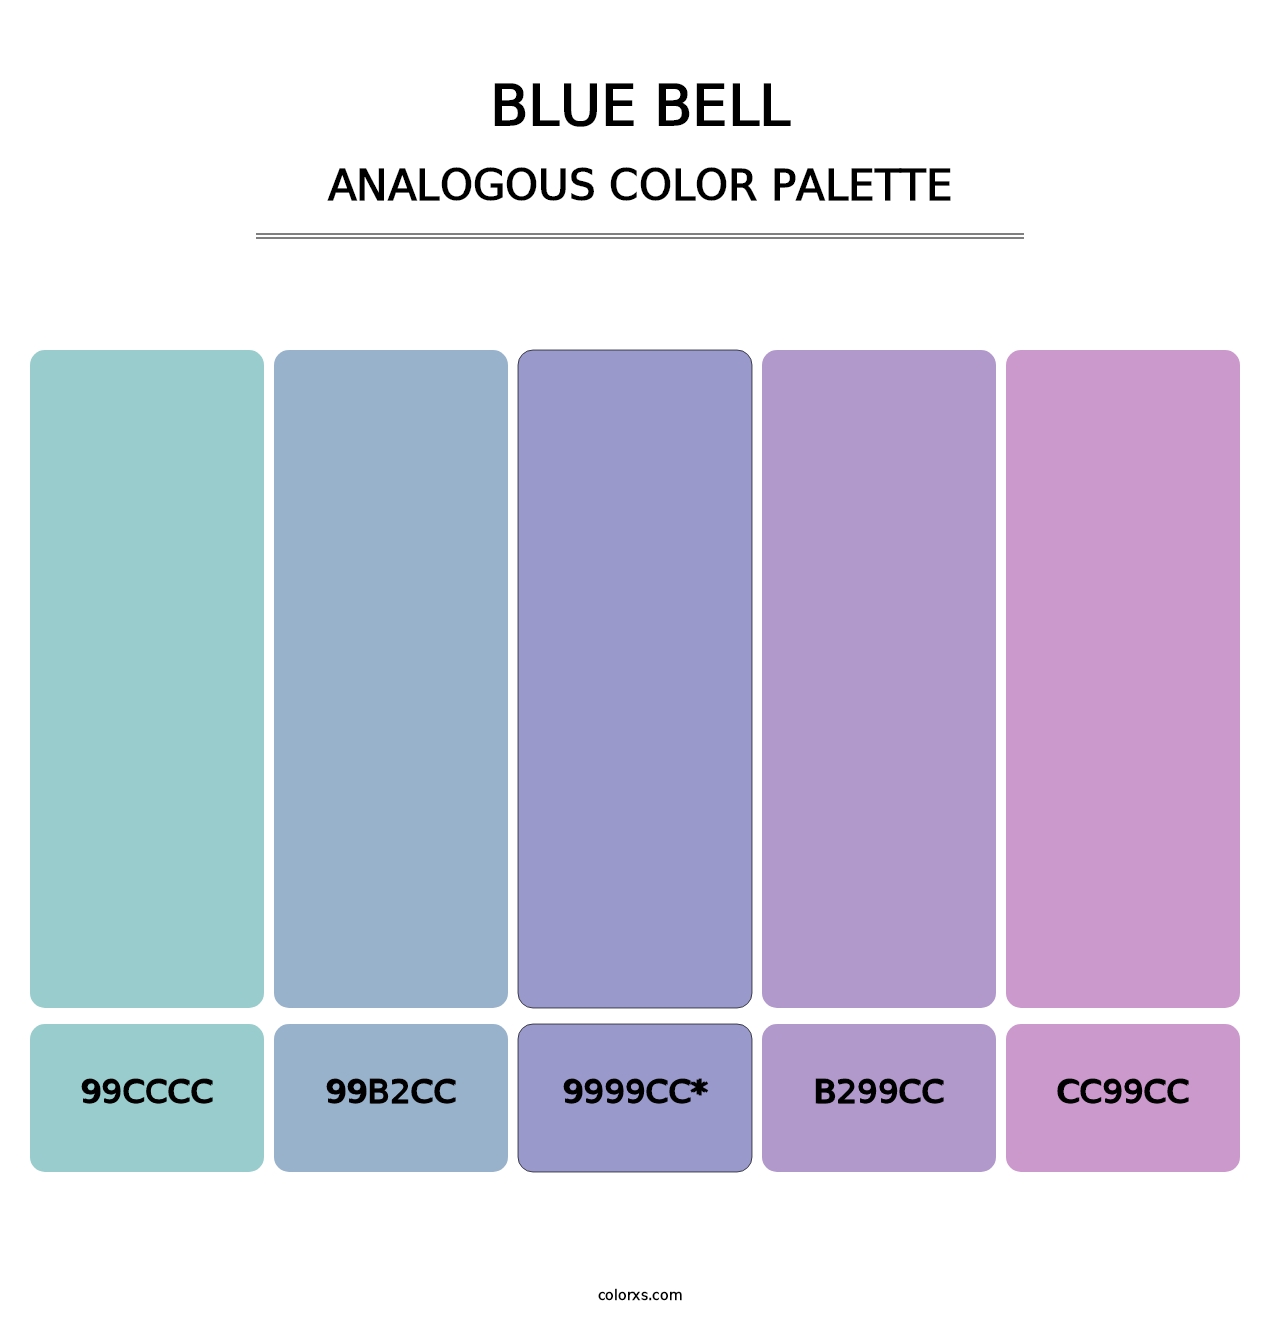 Blue Bell - Analogous Color Palette